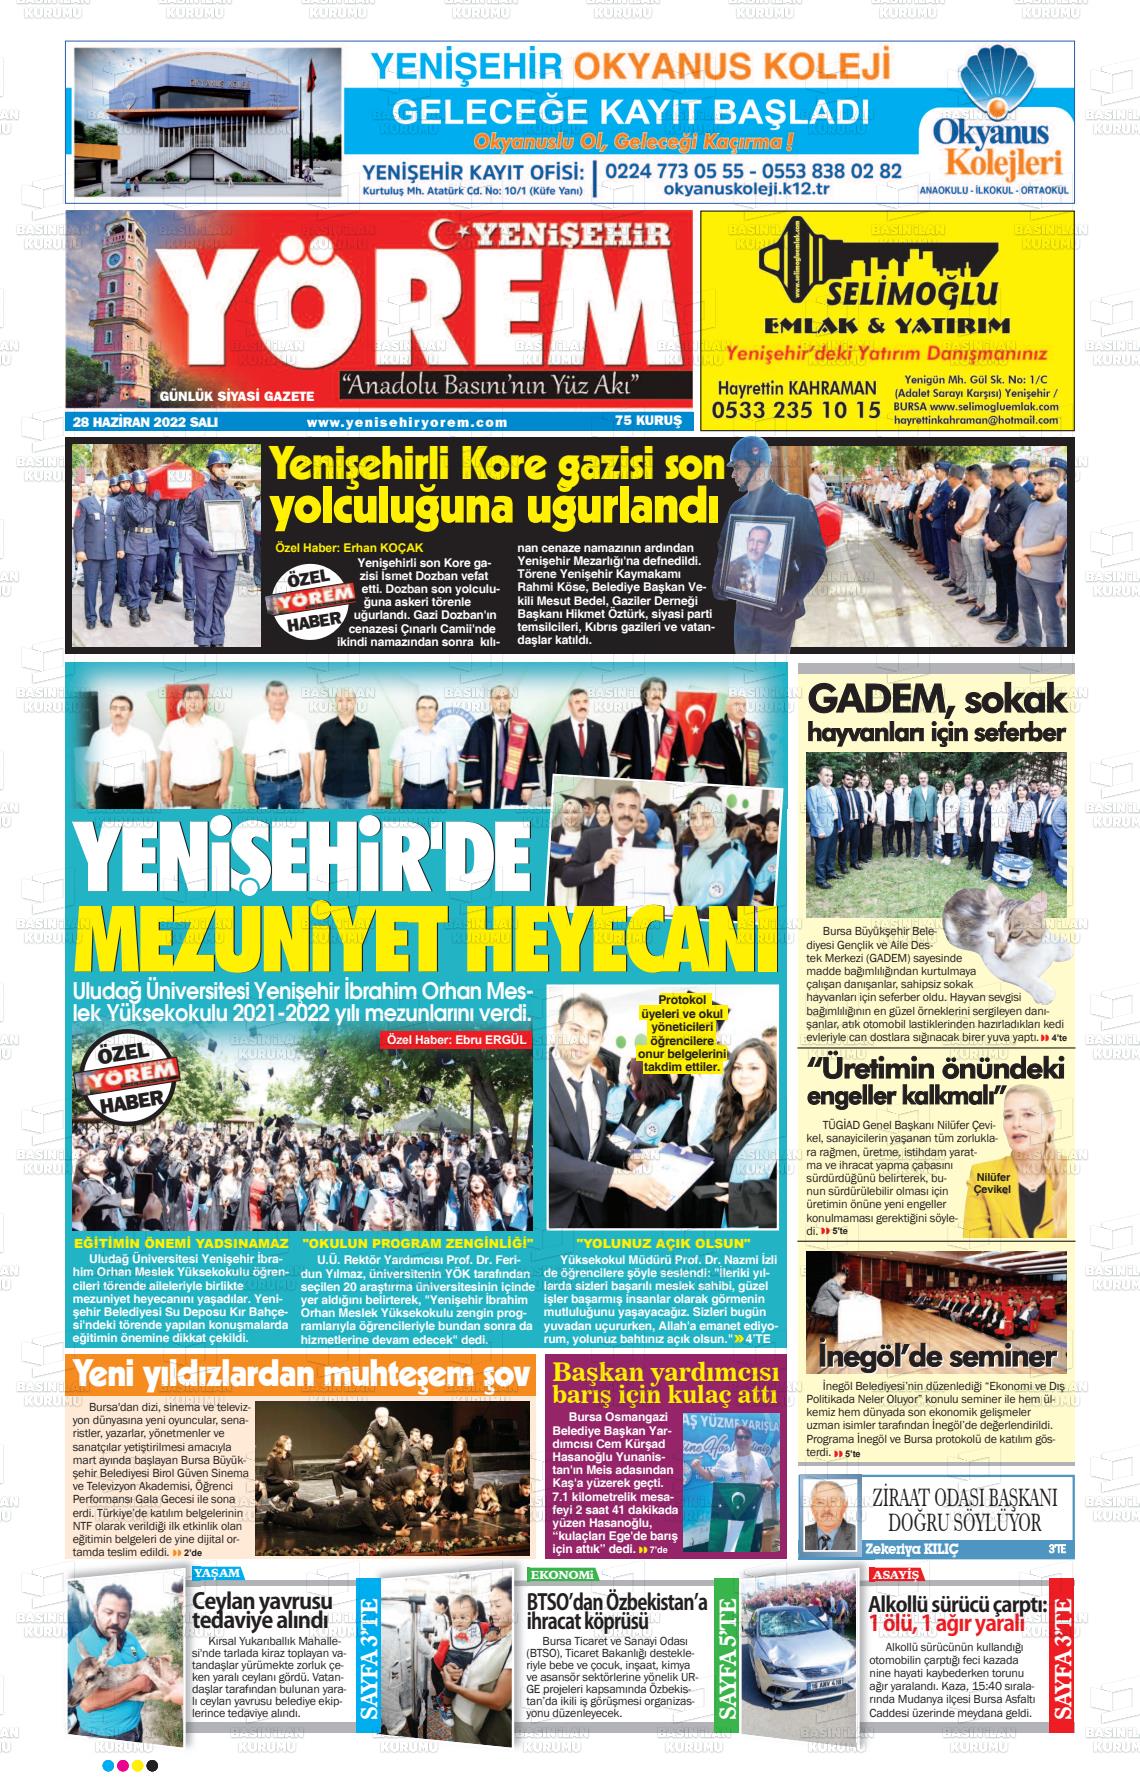 28 Haziran 2022 Yenişehir Yörem Gazete Manşeti